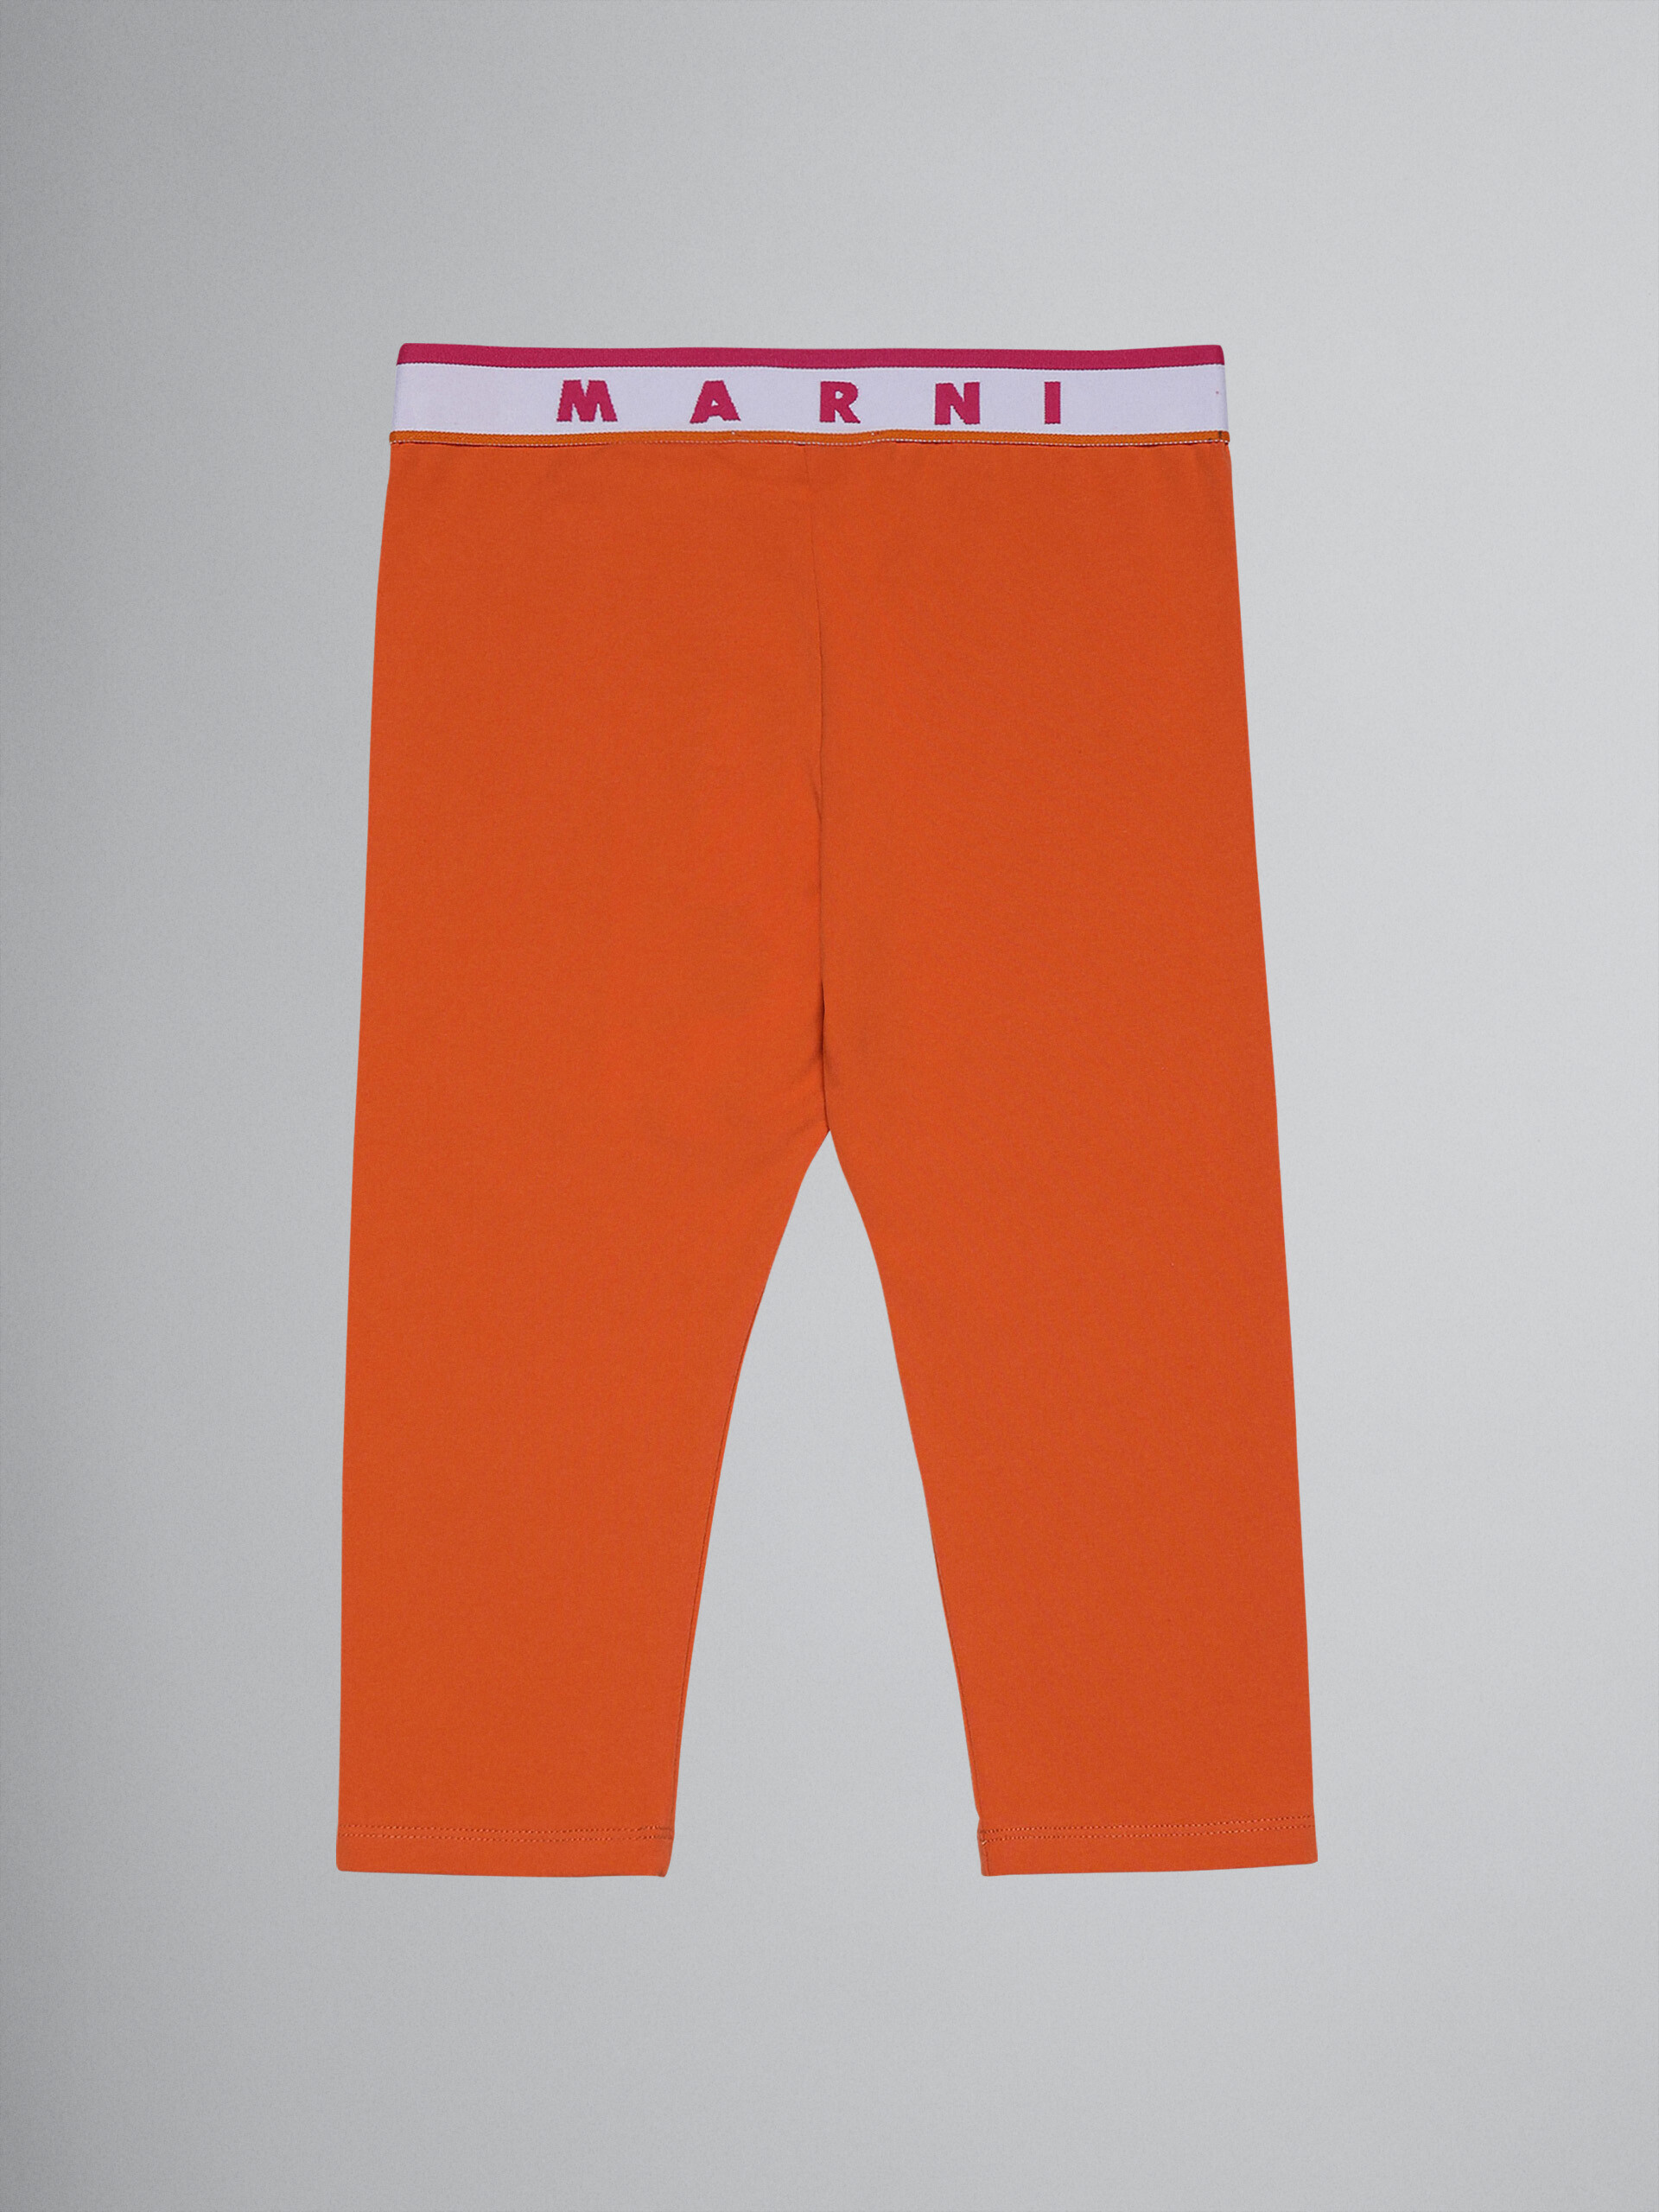 Leggings al ginocchio in jersey elasticizzato arancio con logo - Pantaloni - Image 1